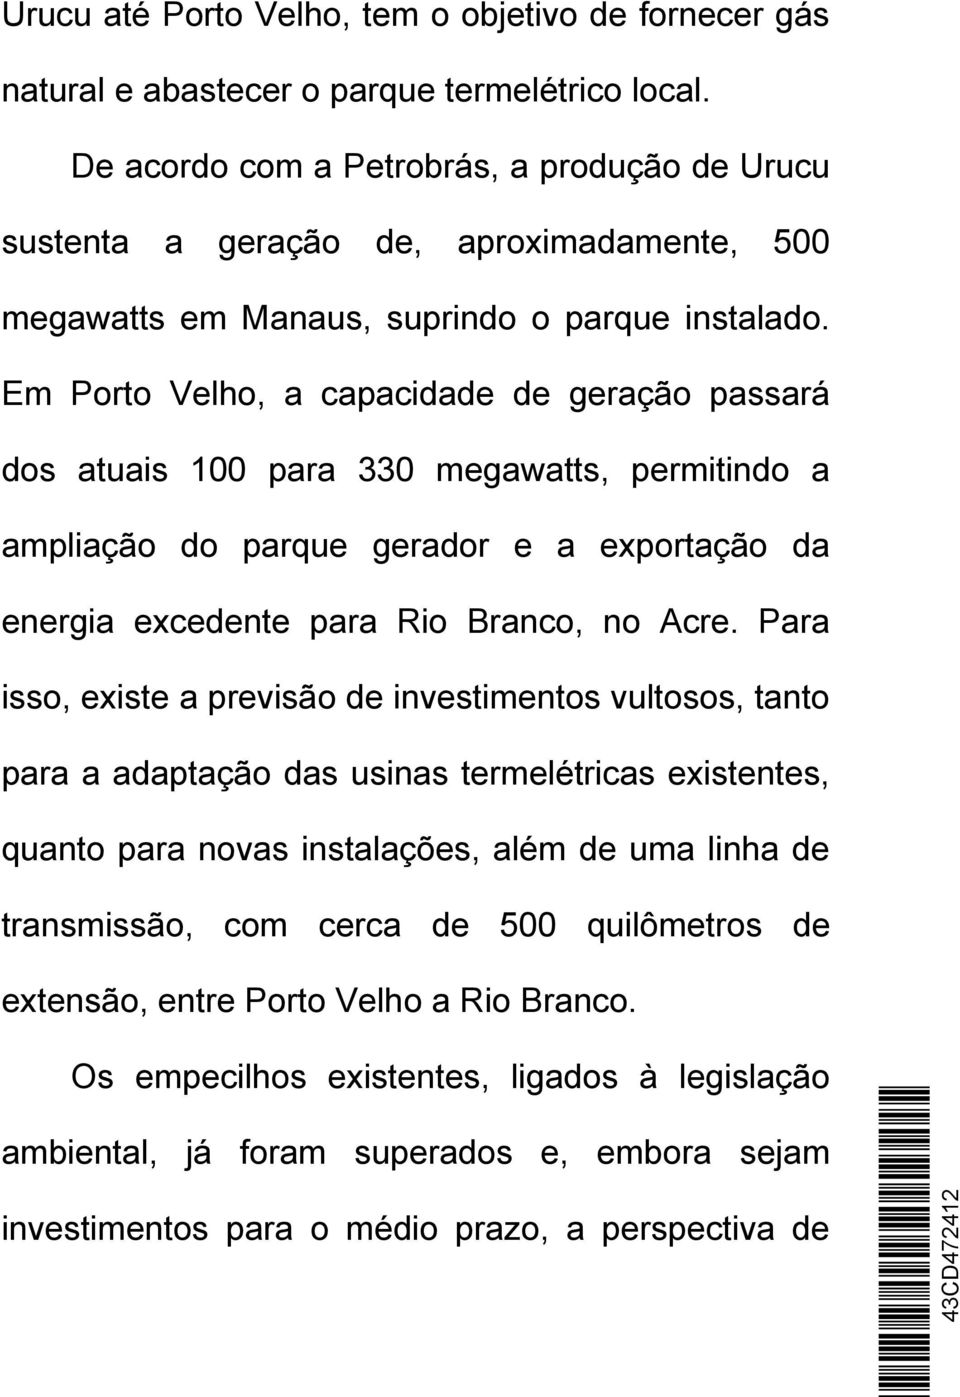 Em Porto Velho, a capacidade de geração passará dos atuais 100 para 330 megawatts, permitindo a ampliação do parque gerador e a exportação da energia excedente para Rio Branco, no Acre.